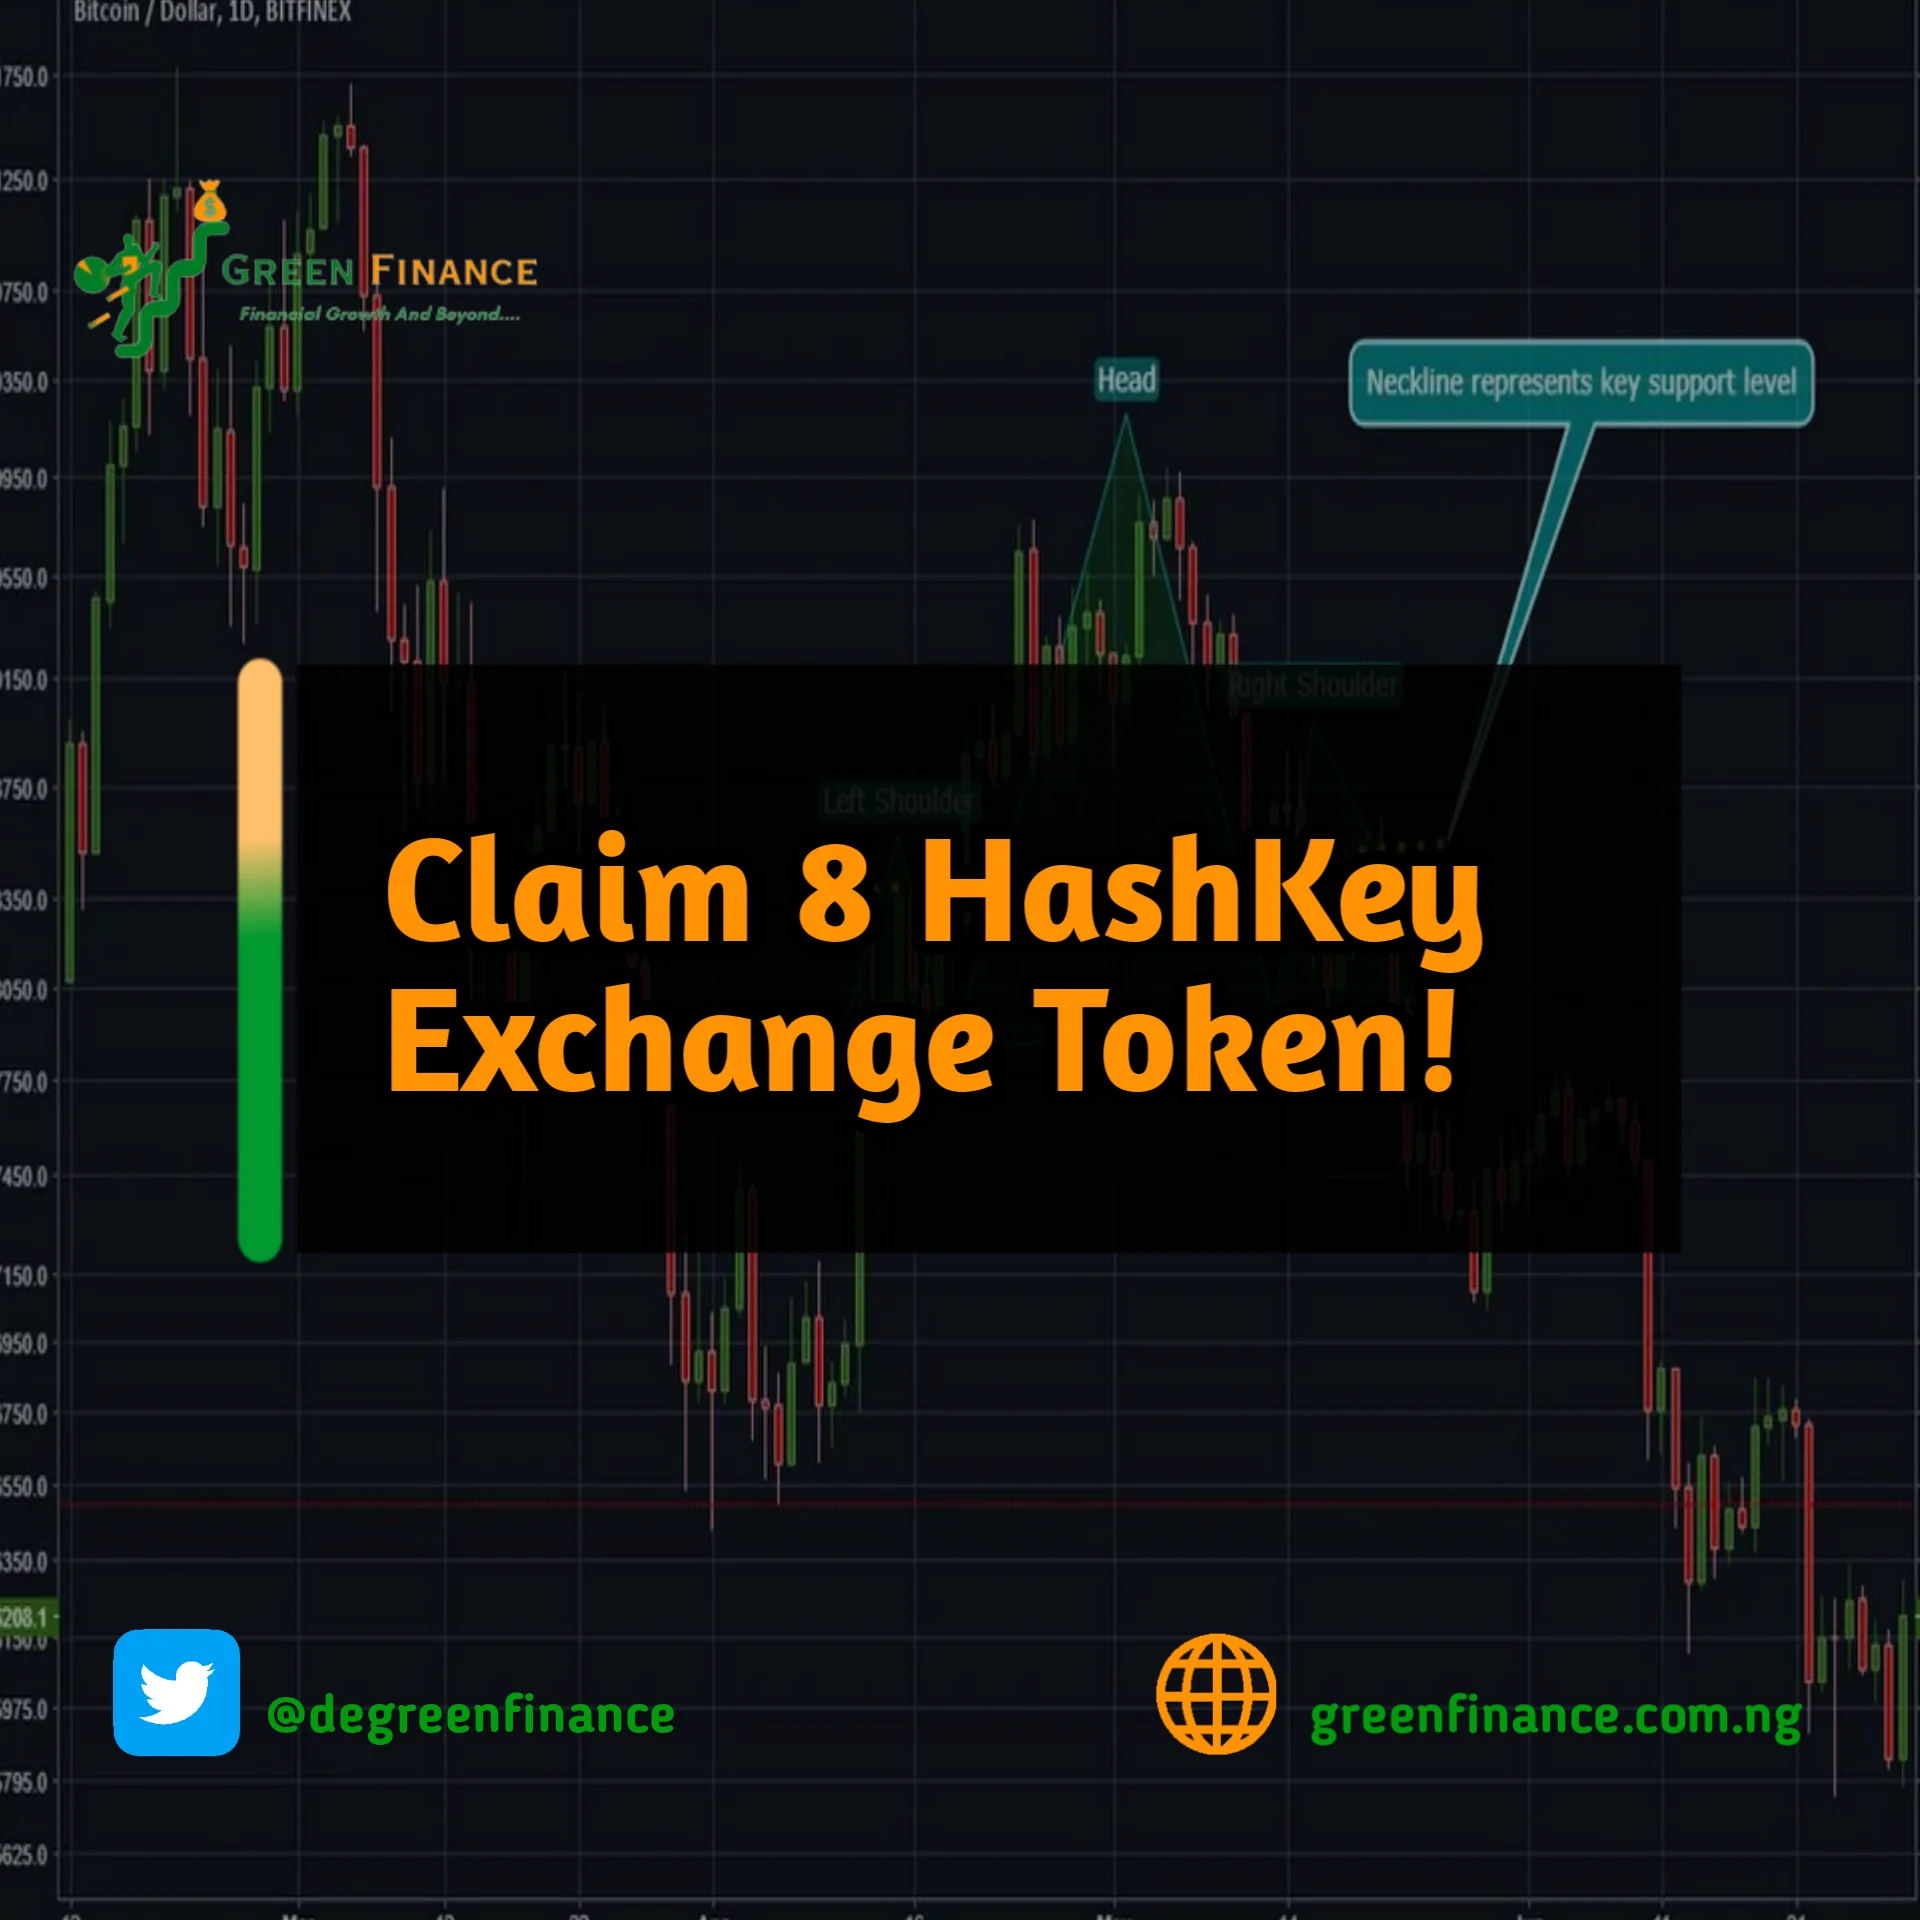 HashKey exchange airdrop